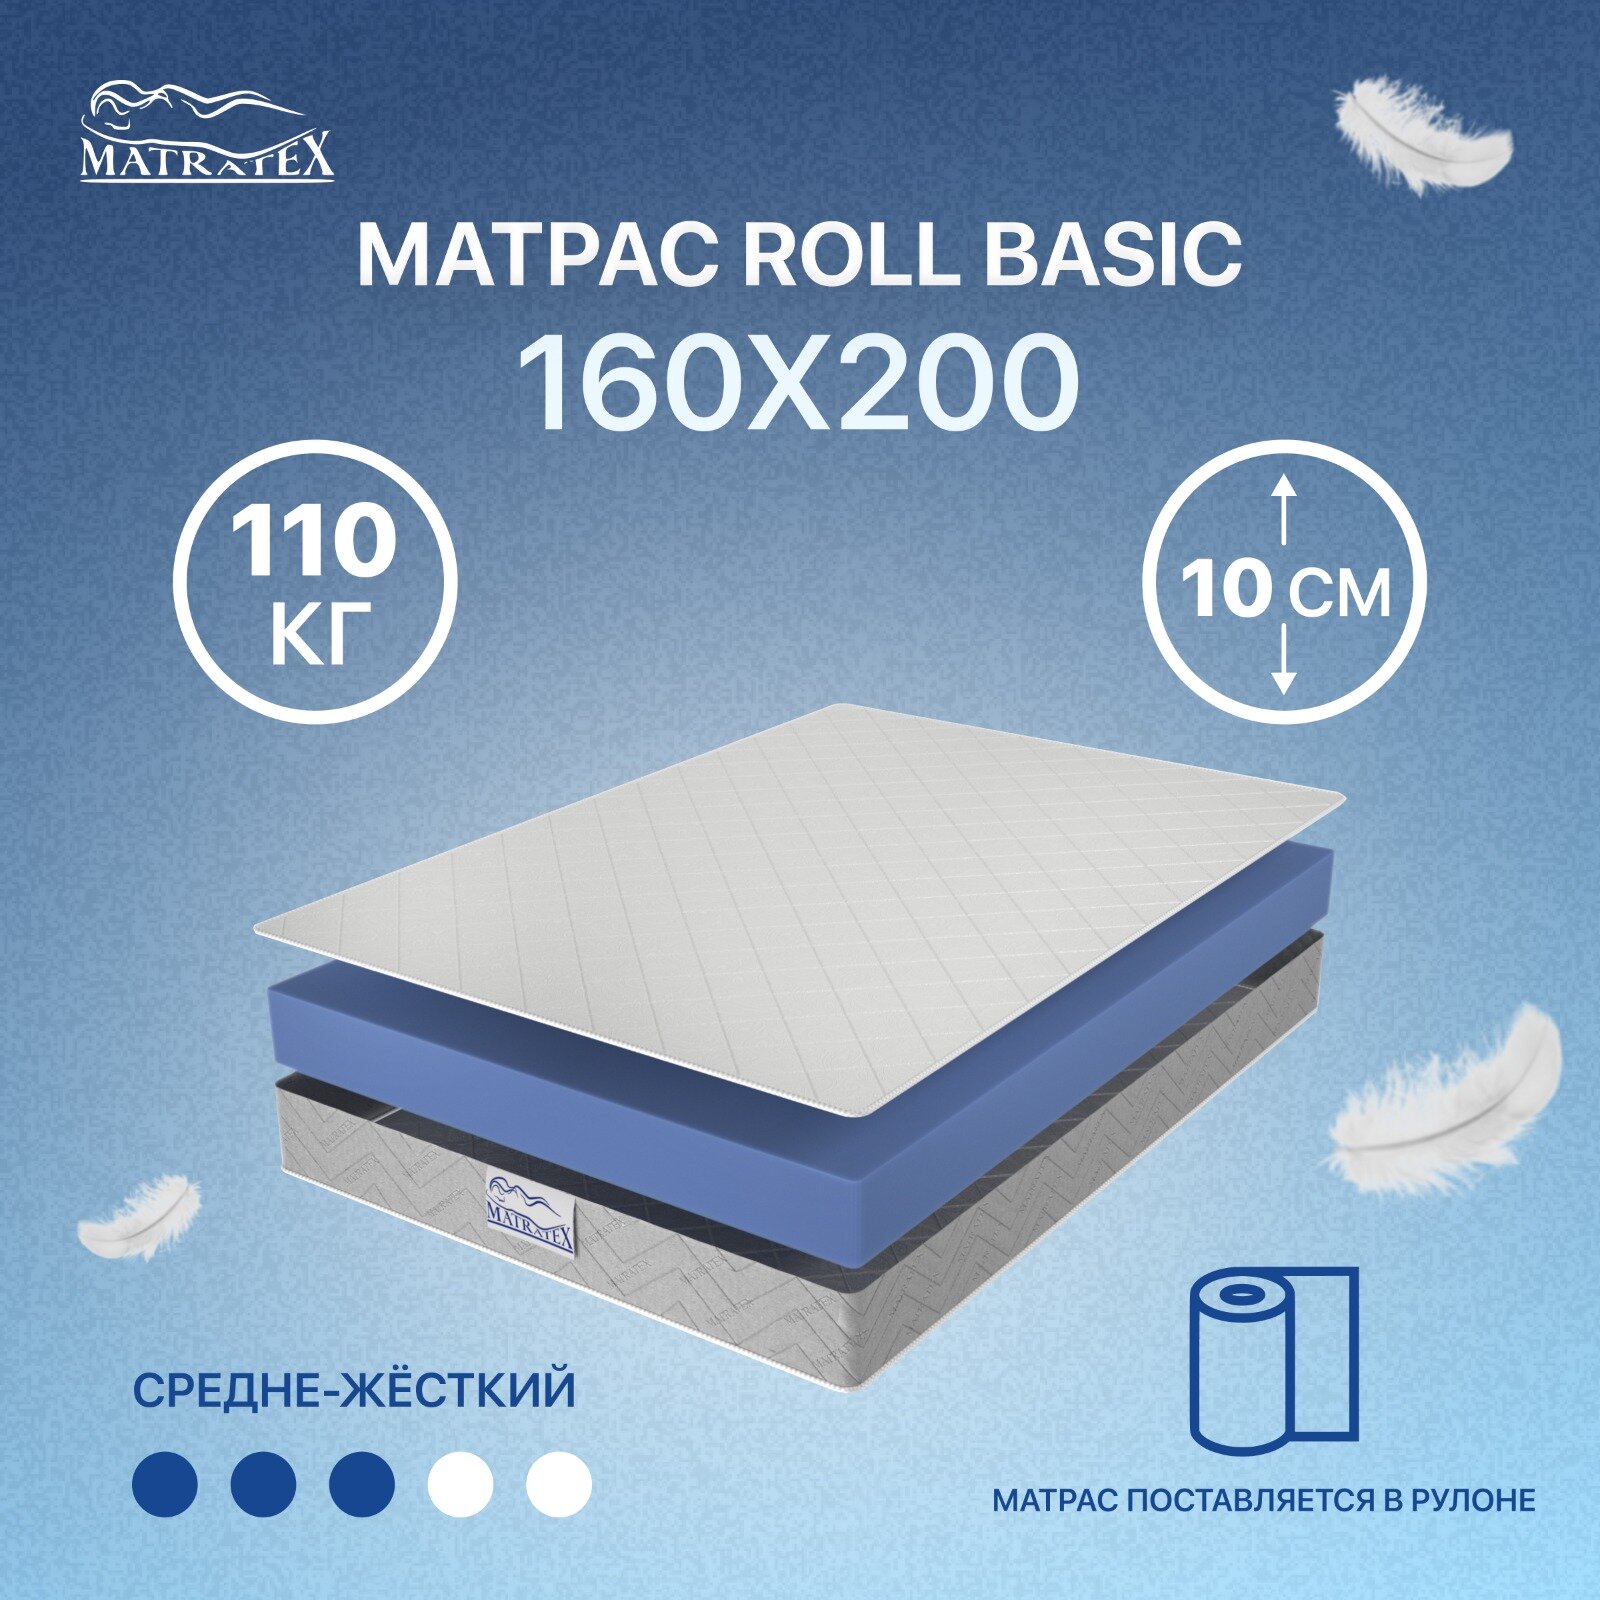 Матрас ROLL BASIC 160х200